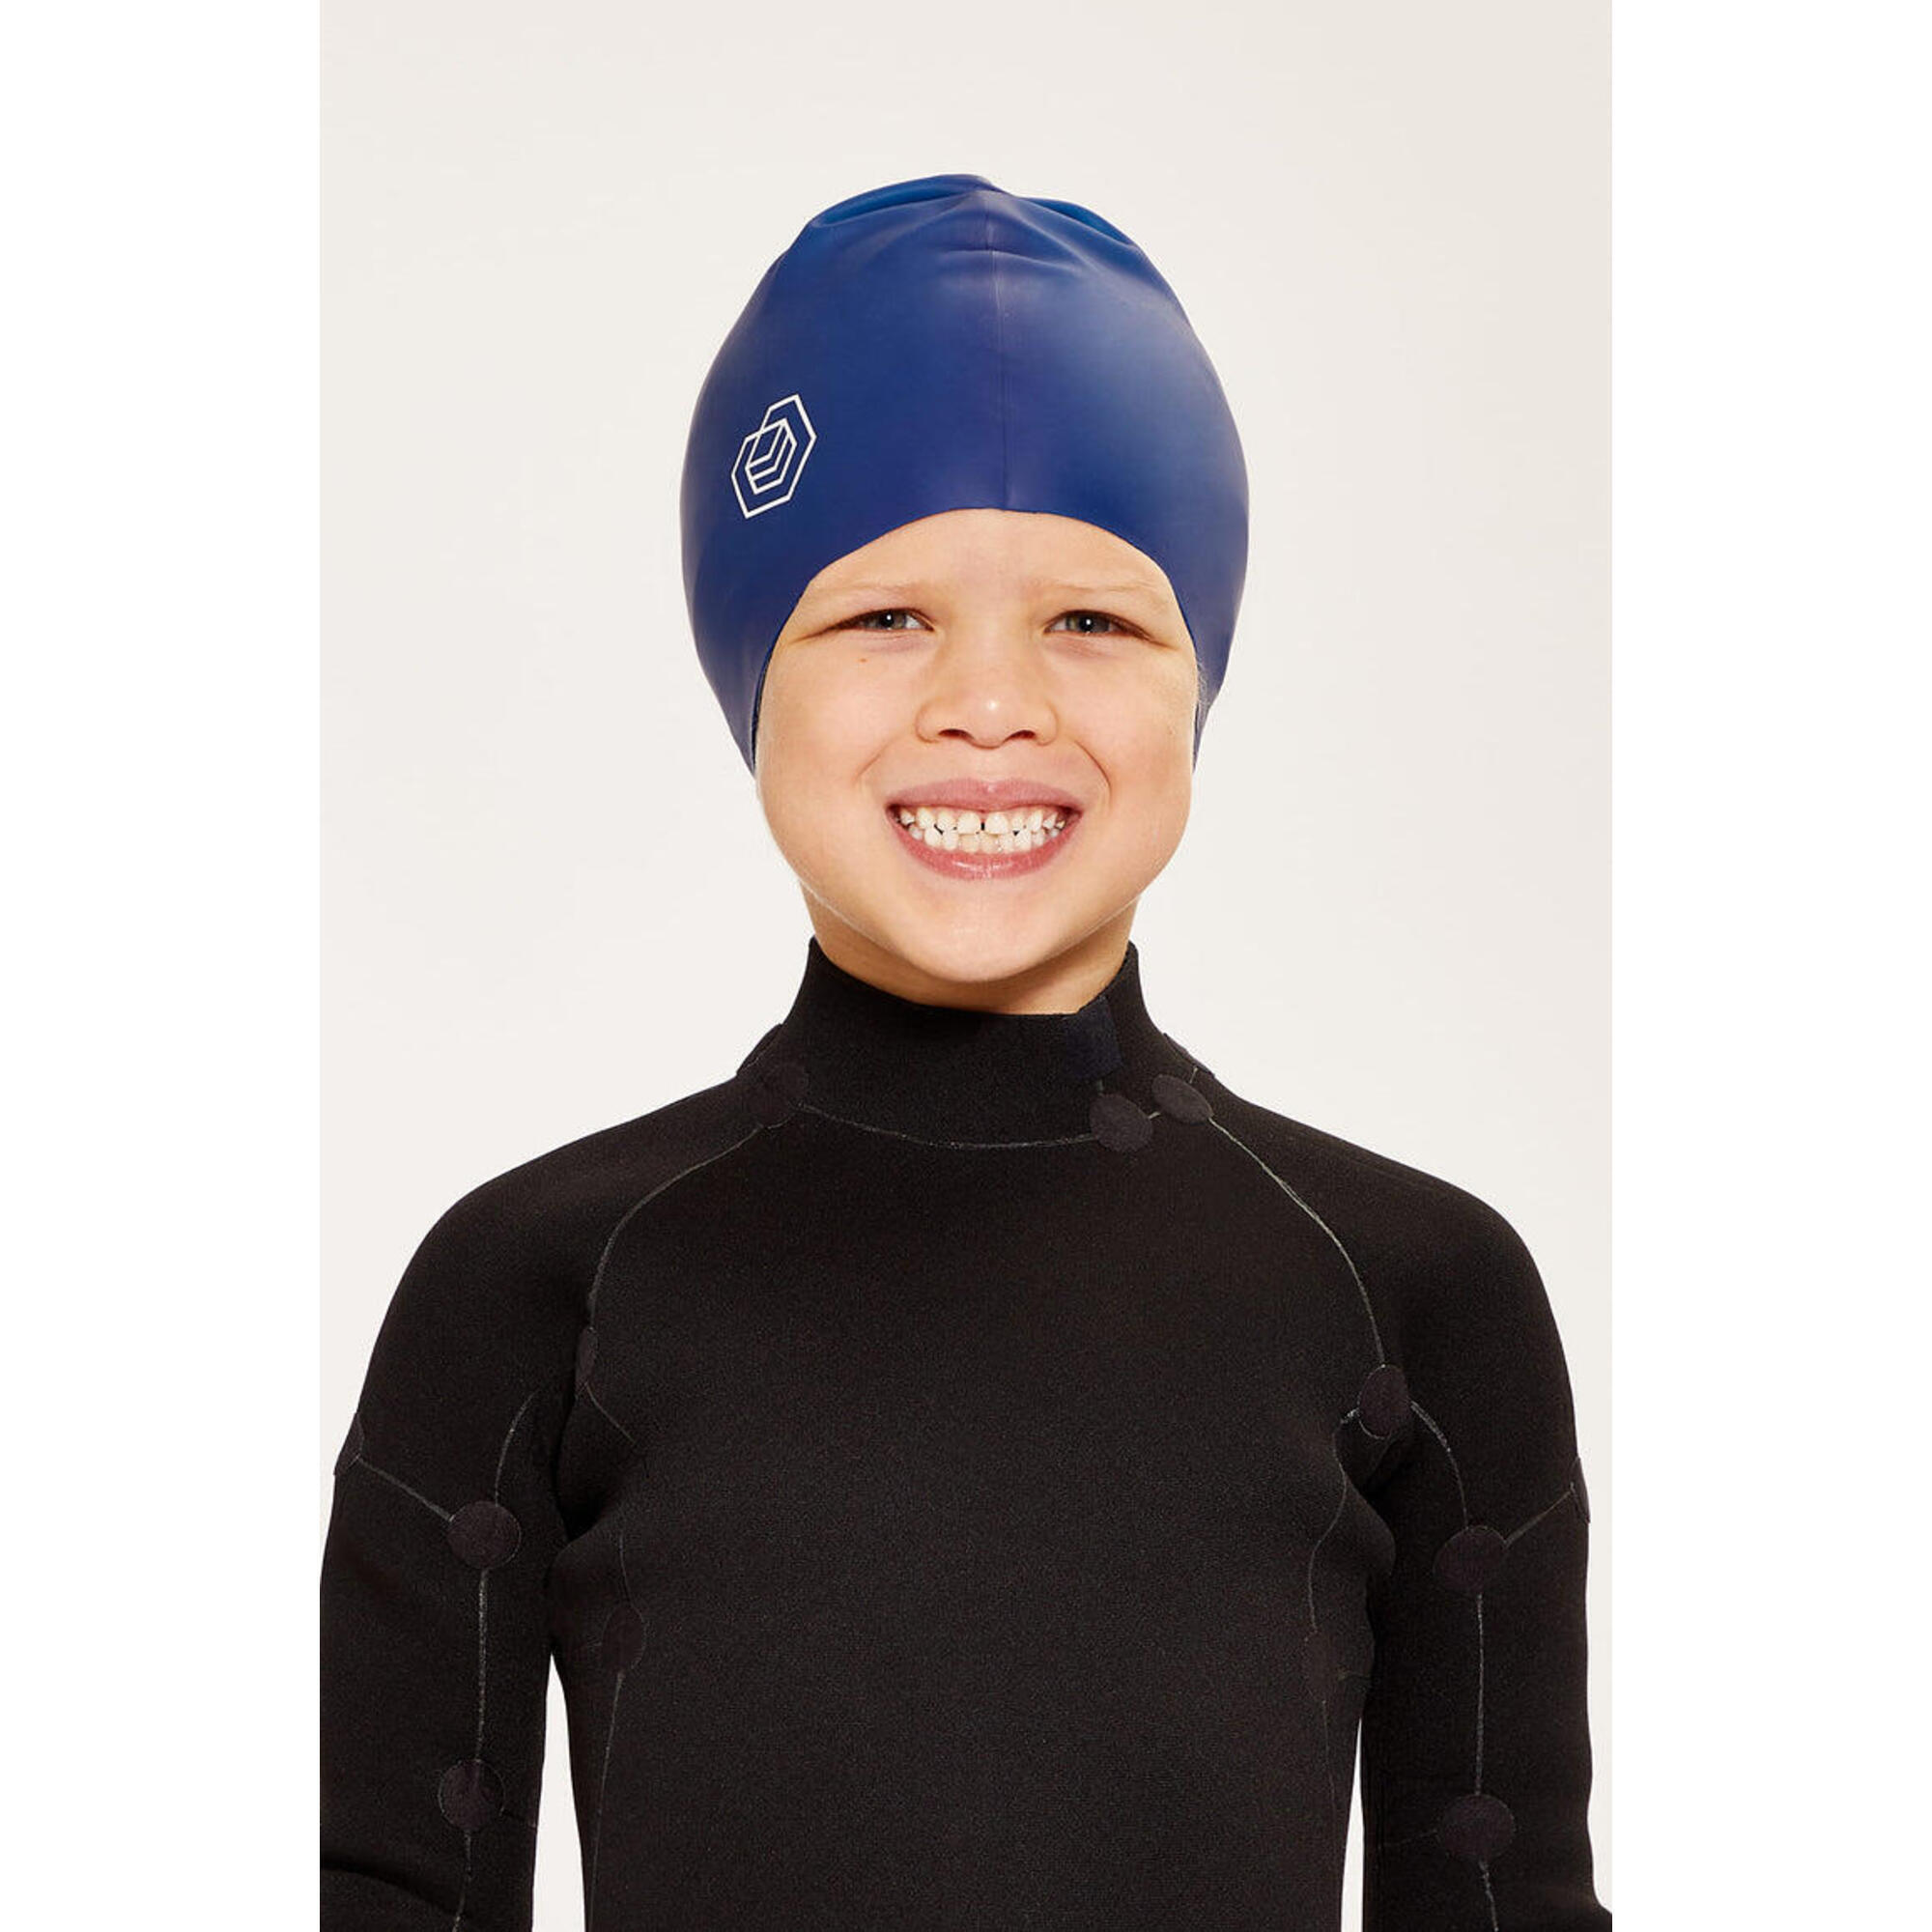 SOUL CAP Children's Swim Cap for Long Hair (Medium) - Navy